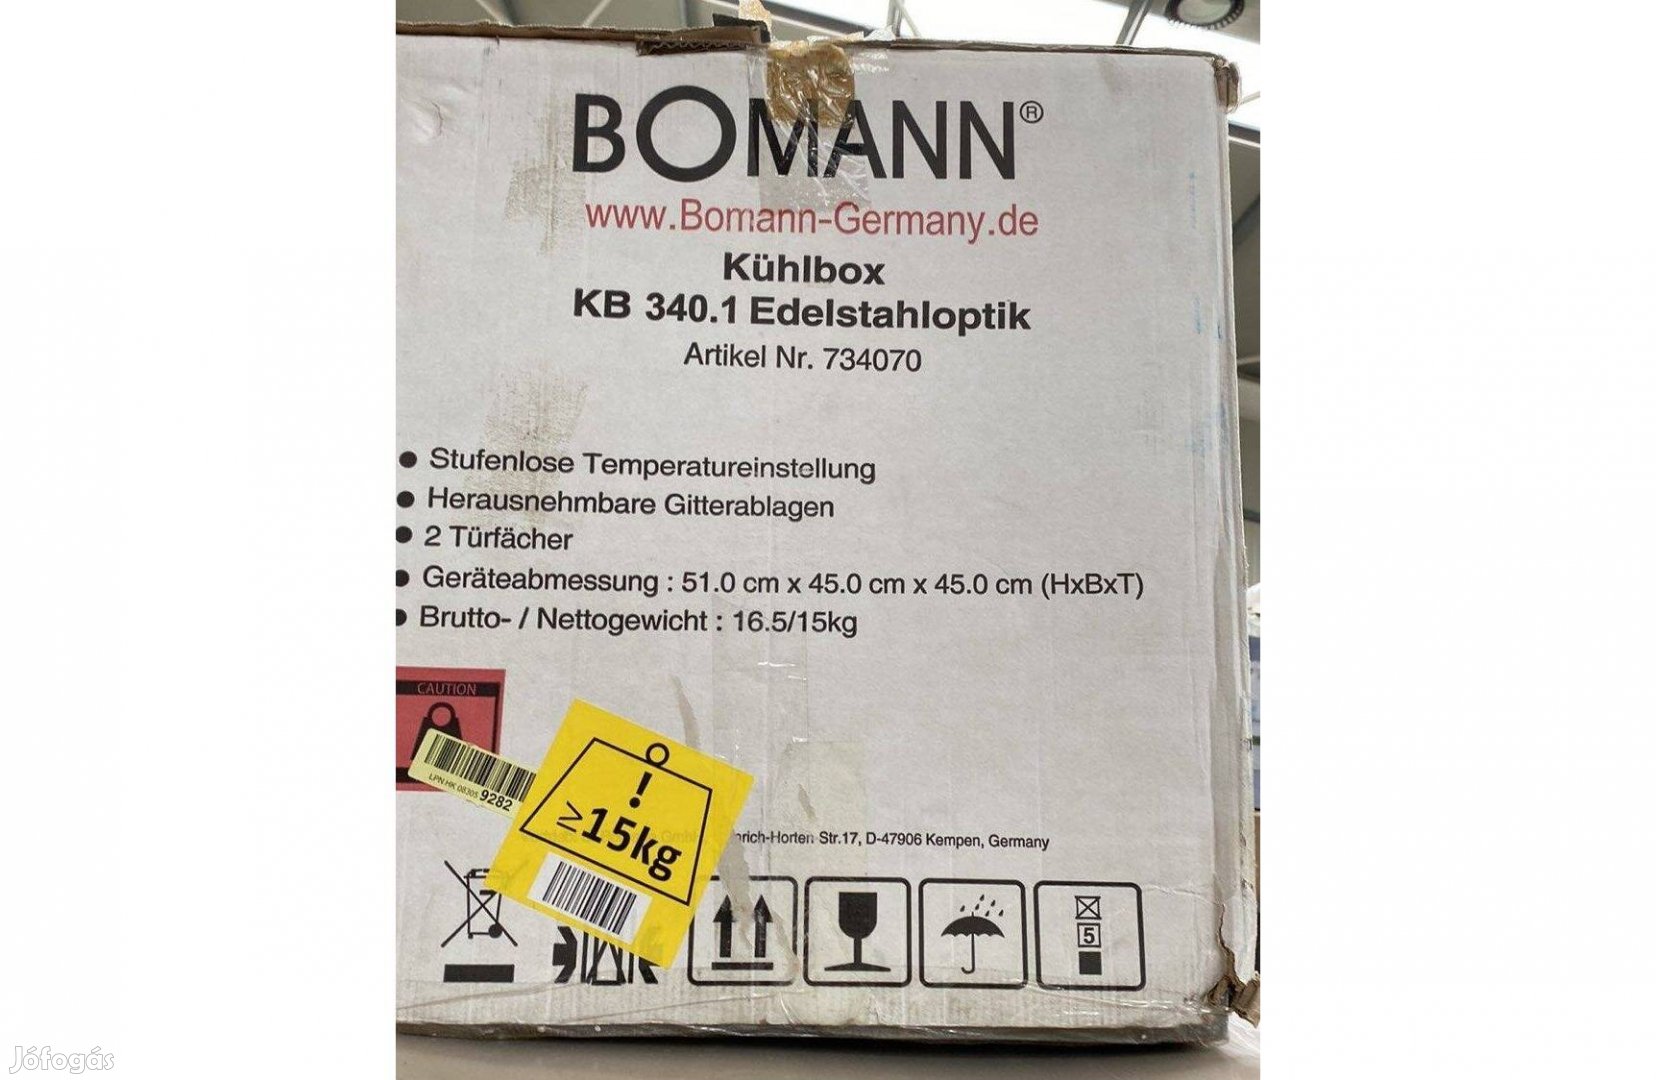 Bomann GB 341.1 Fagyasztószekrény